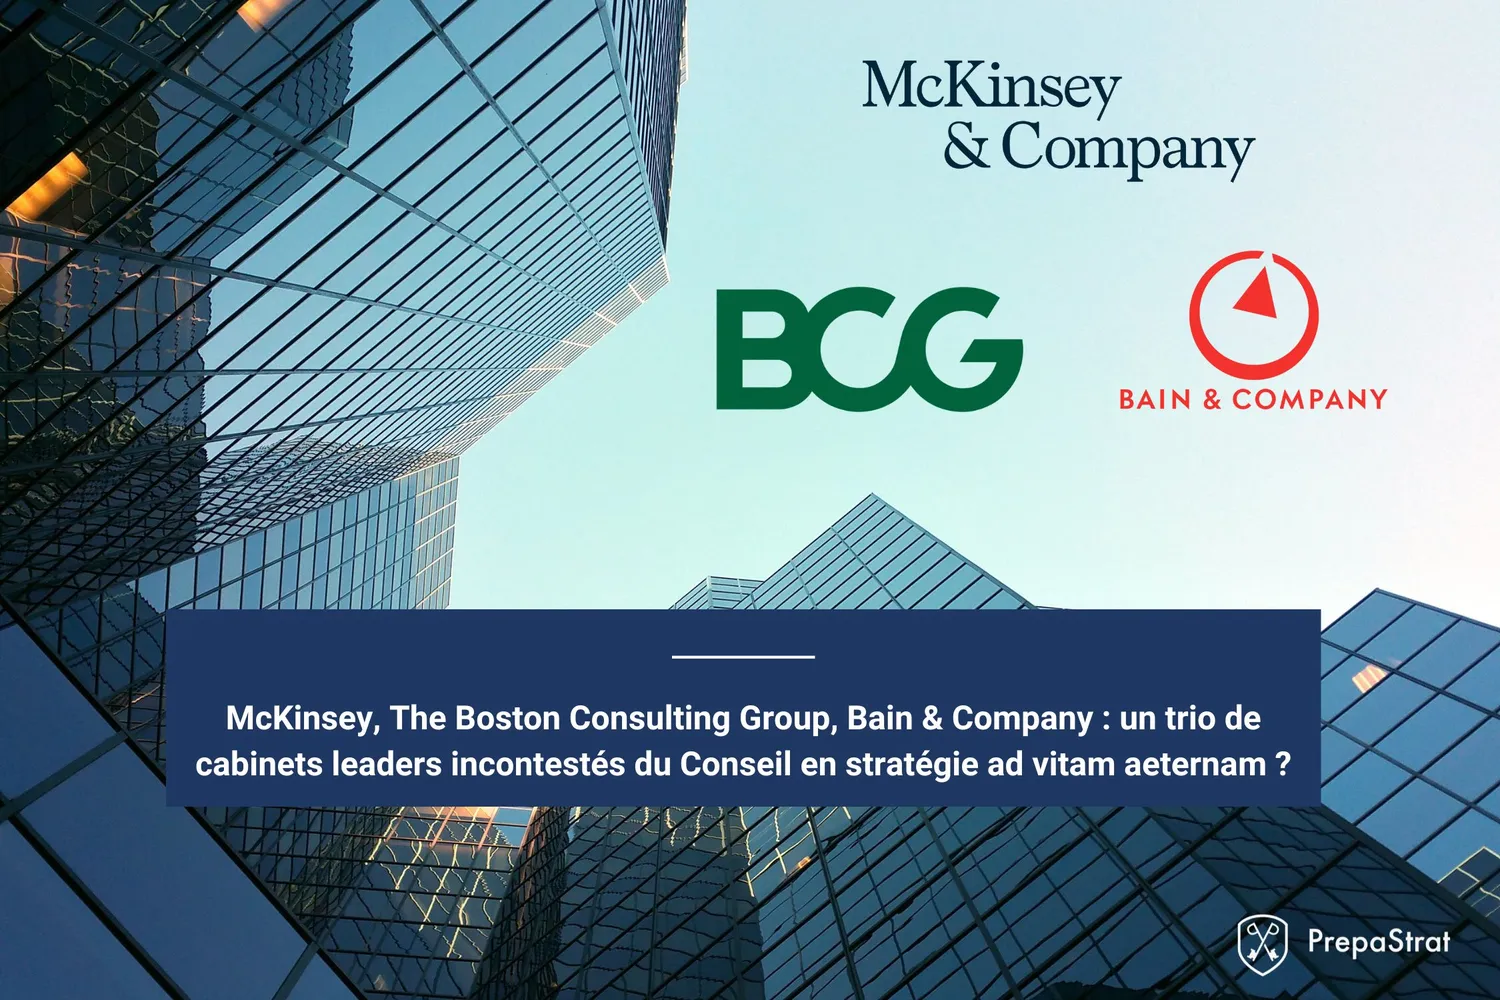 McKinsey, The Boston Consulting Group, Bain & Company - Un trio de cabinets leaders incontestés du Conseil en stratégie ad vitam aeternam